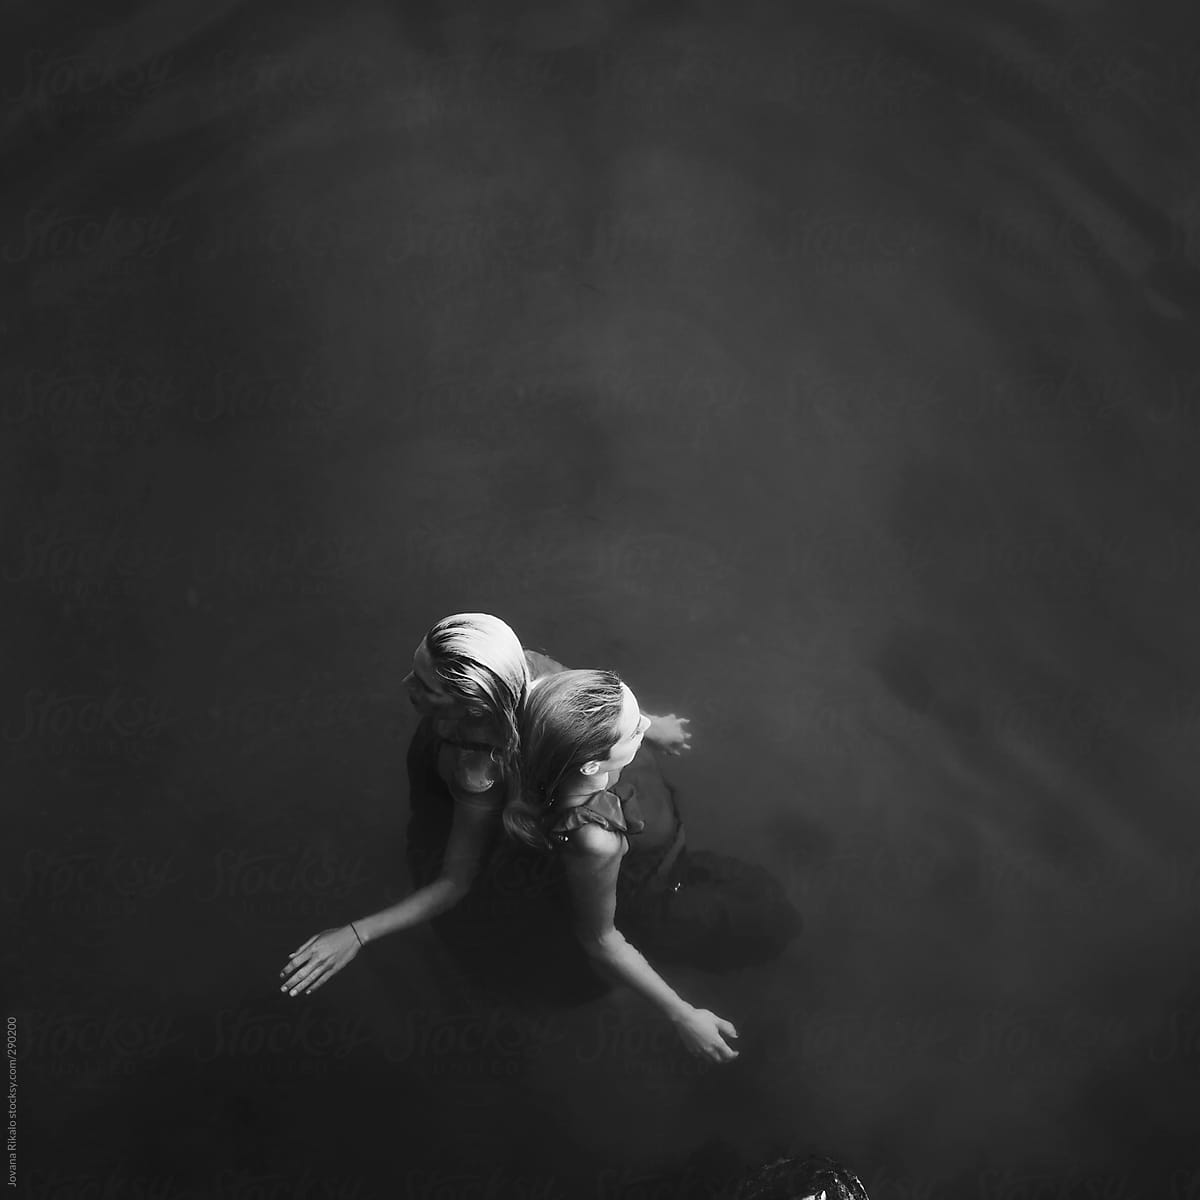 Two Women In Water By Stocksy Contributor Jovana Rikalo Stocksy